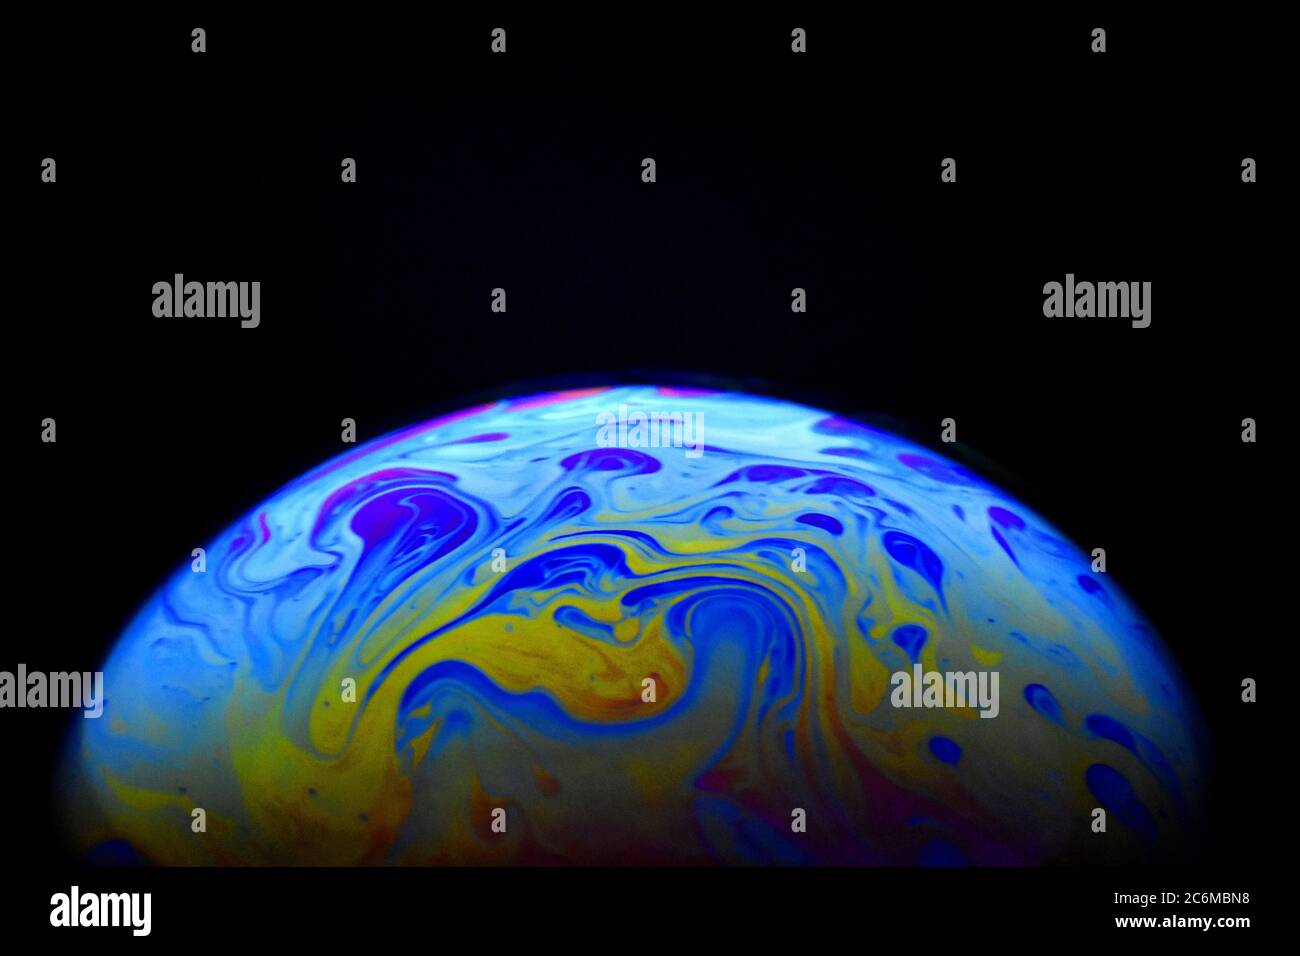 Color aleatorio de superficie de burbuja de jabón. Modelo de atmósfera y planeta. Foto de stock